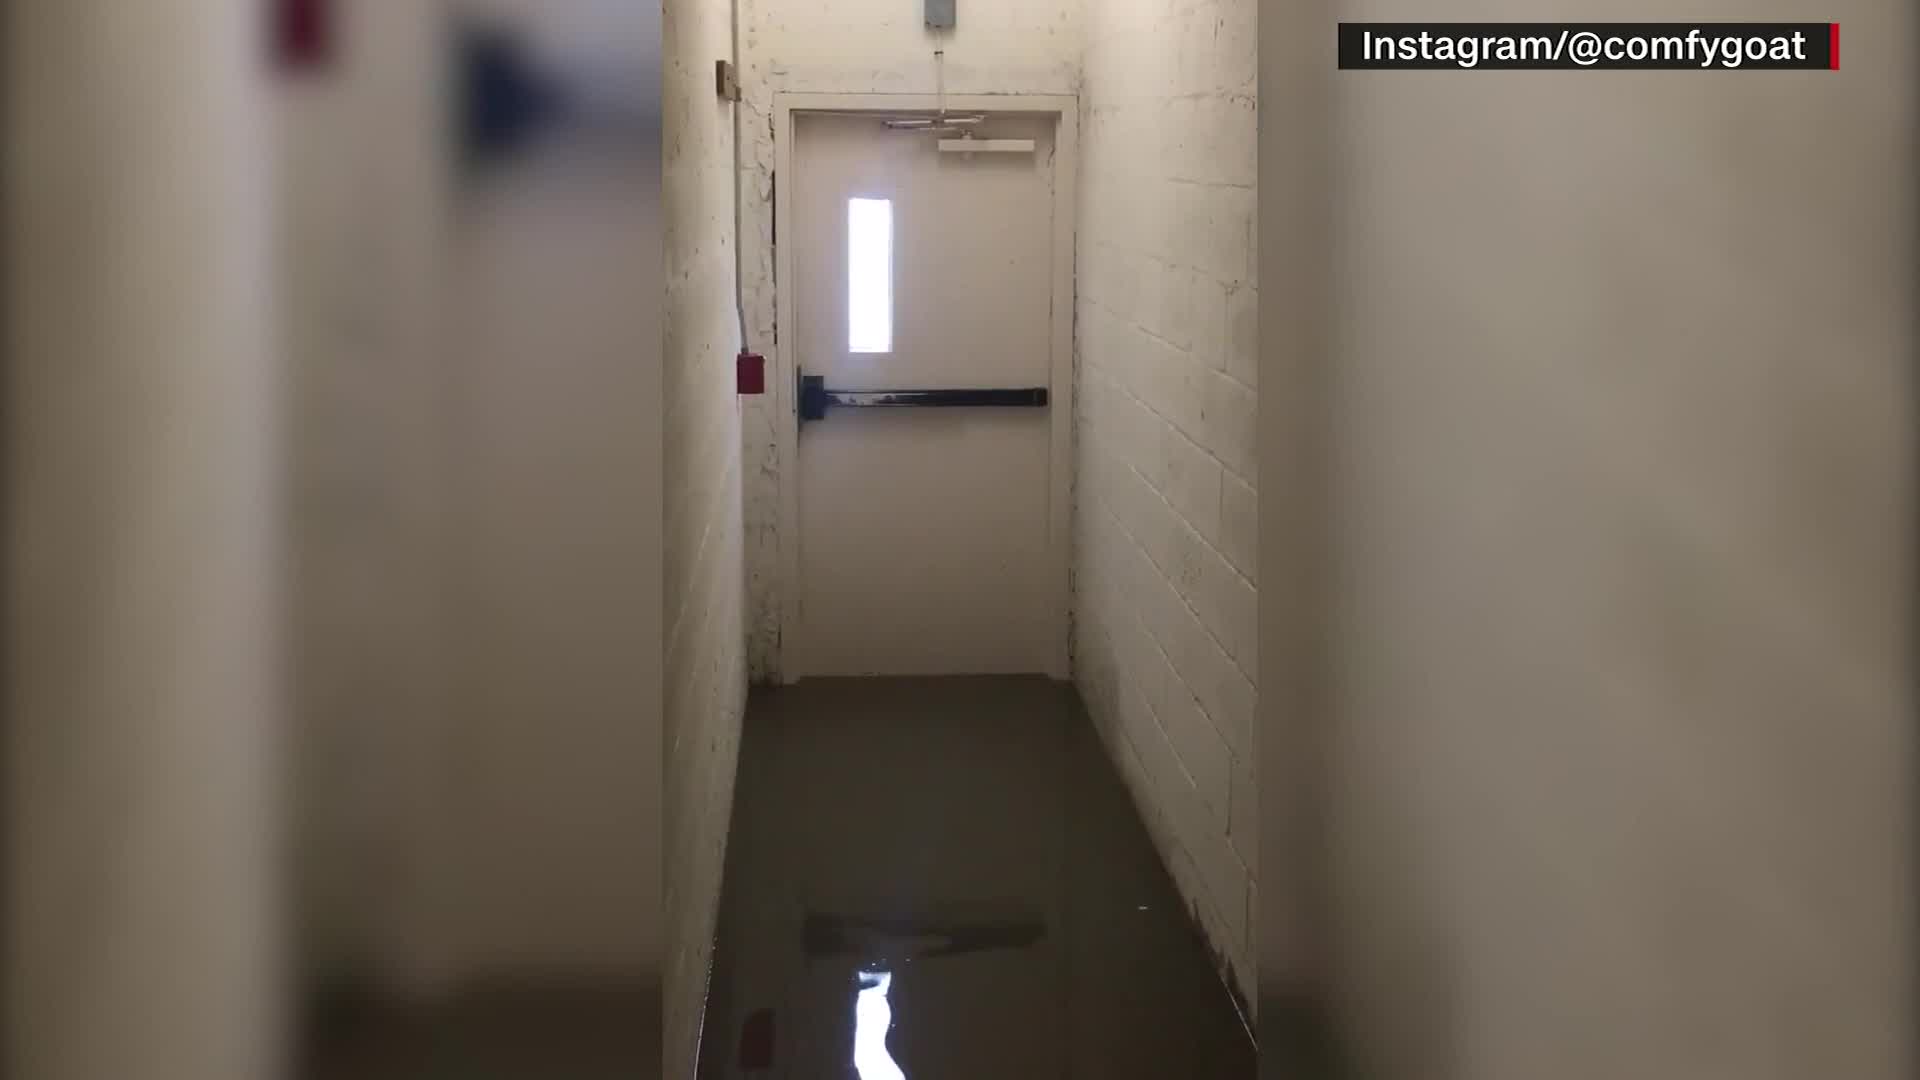 Vídeo: Água invade interior de edifício durante passagem do furacão Ian nos EUA